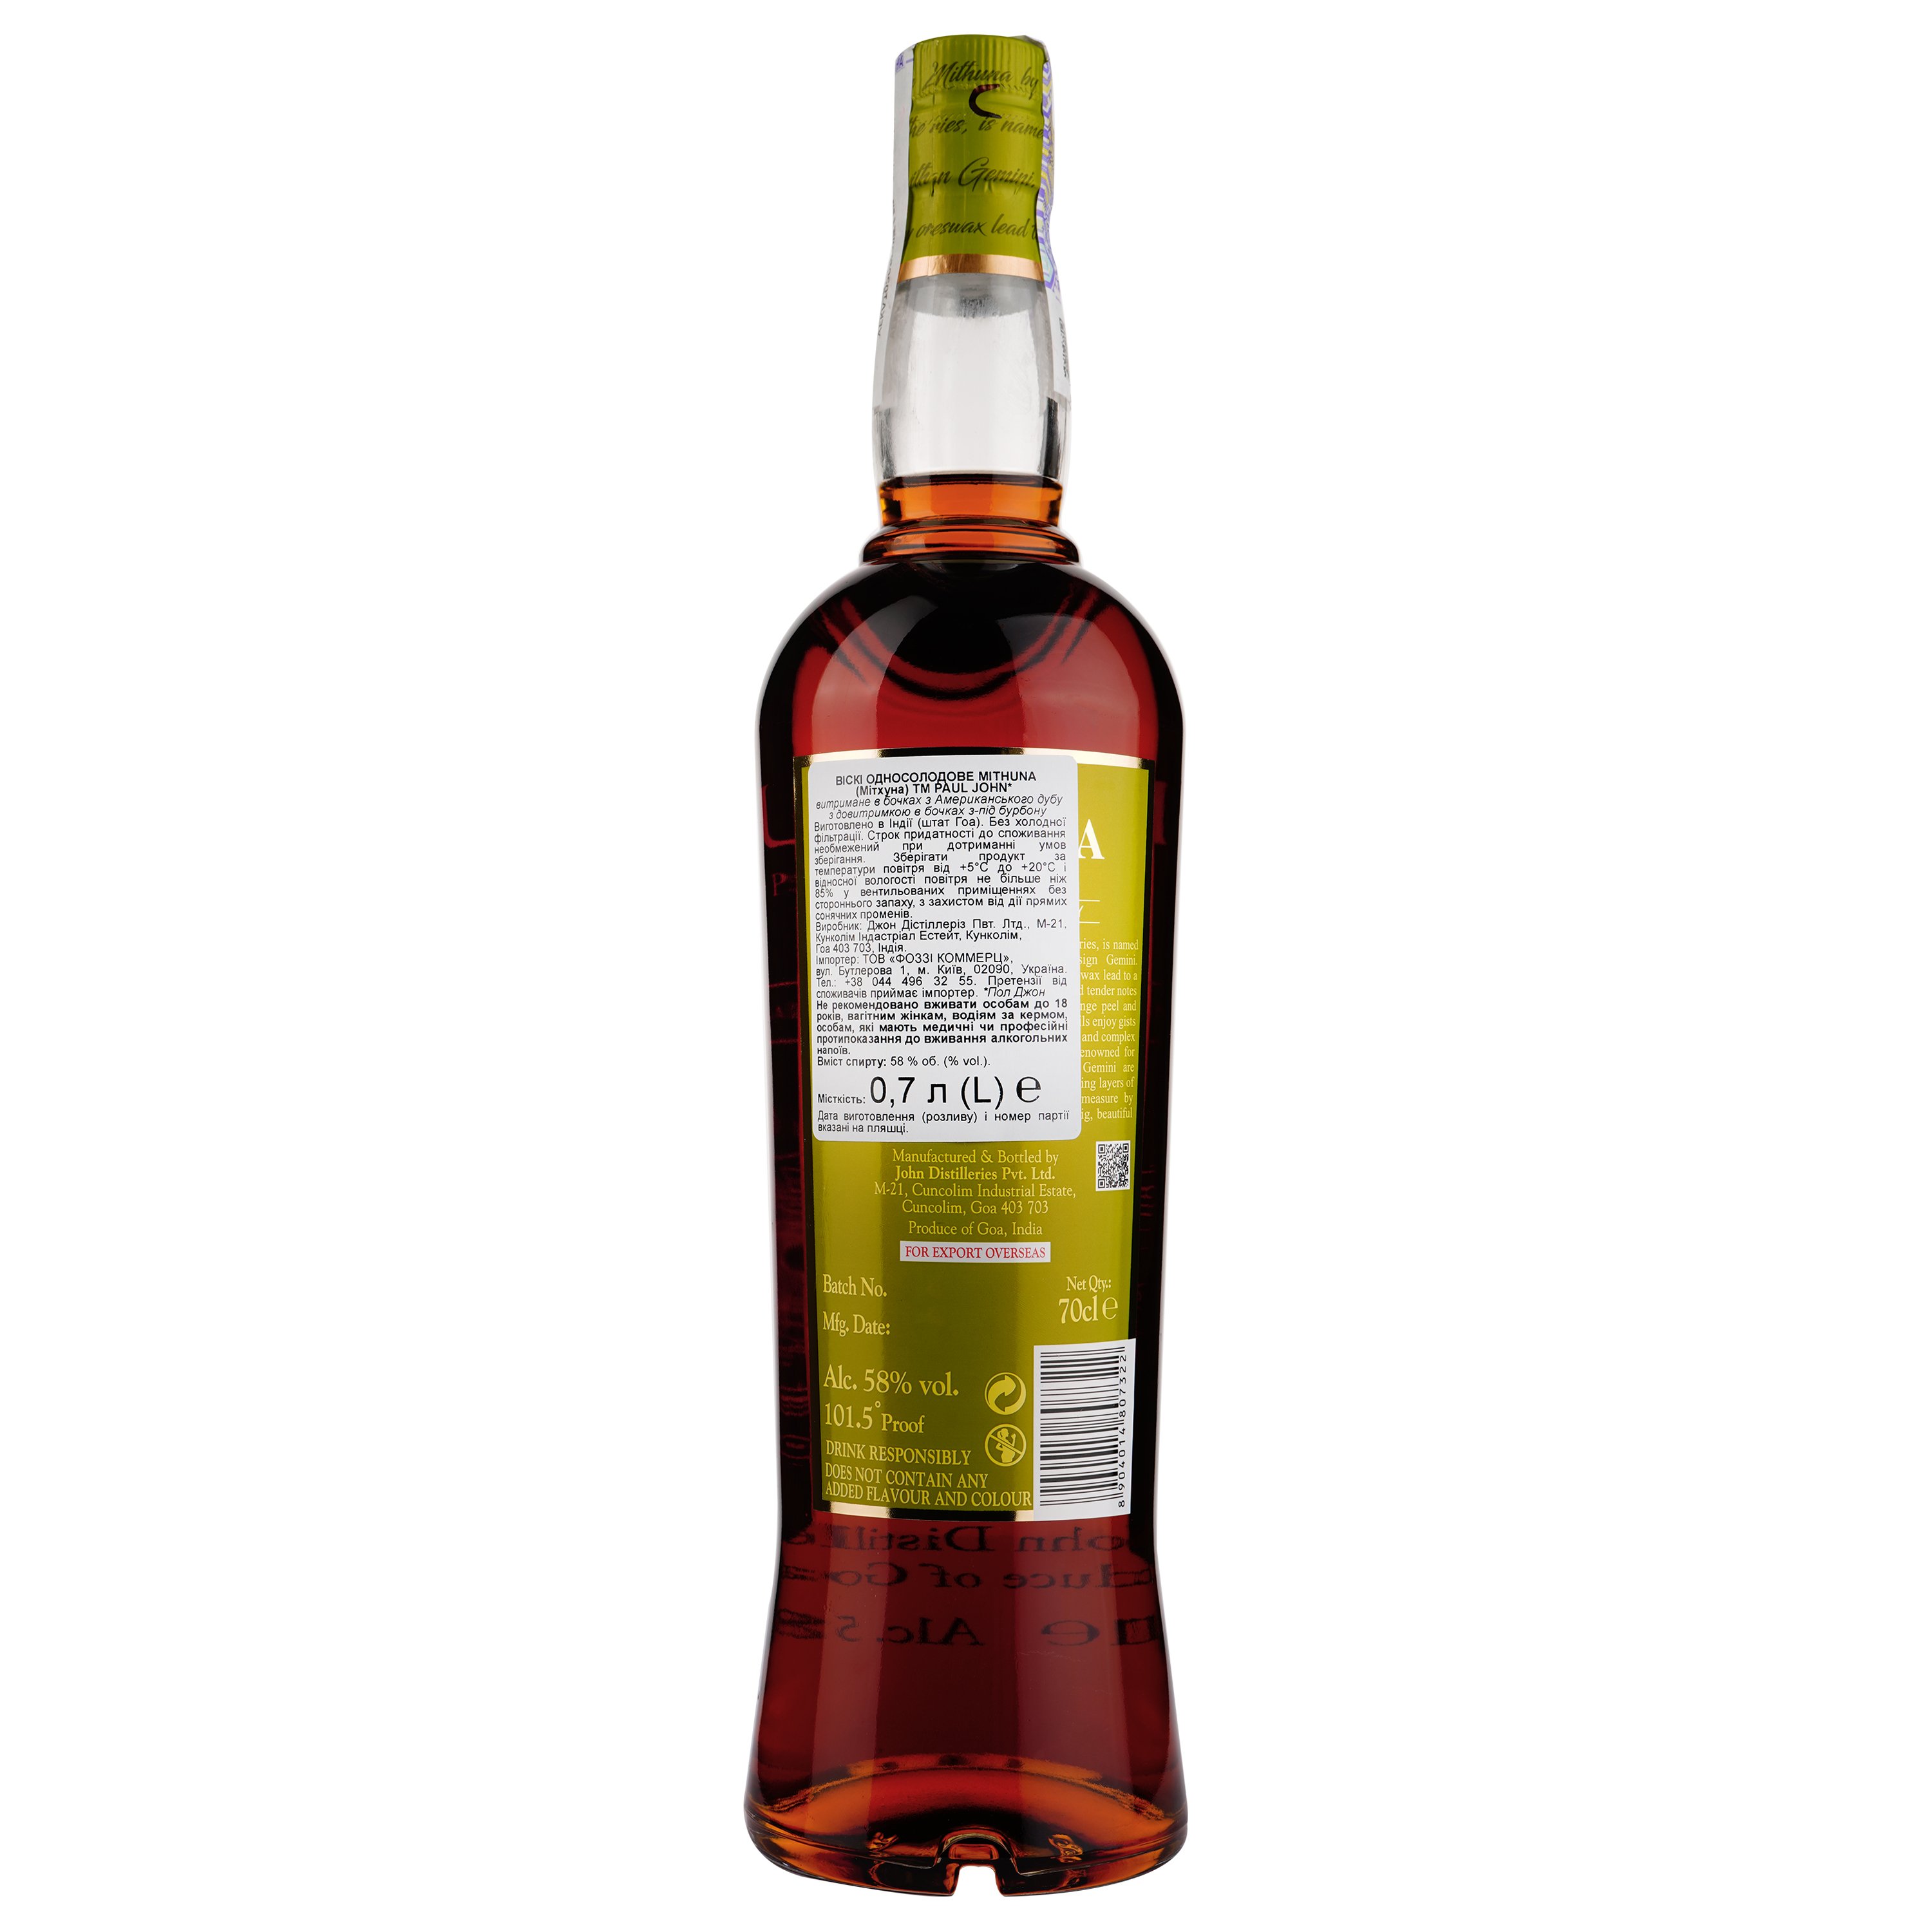 Віскі Paul John Mithuna Single Malt Indian Whisky, в коробці, 58%, 0,7 л - фото 2